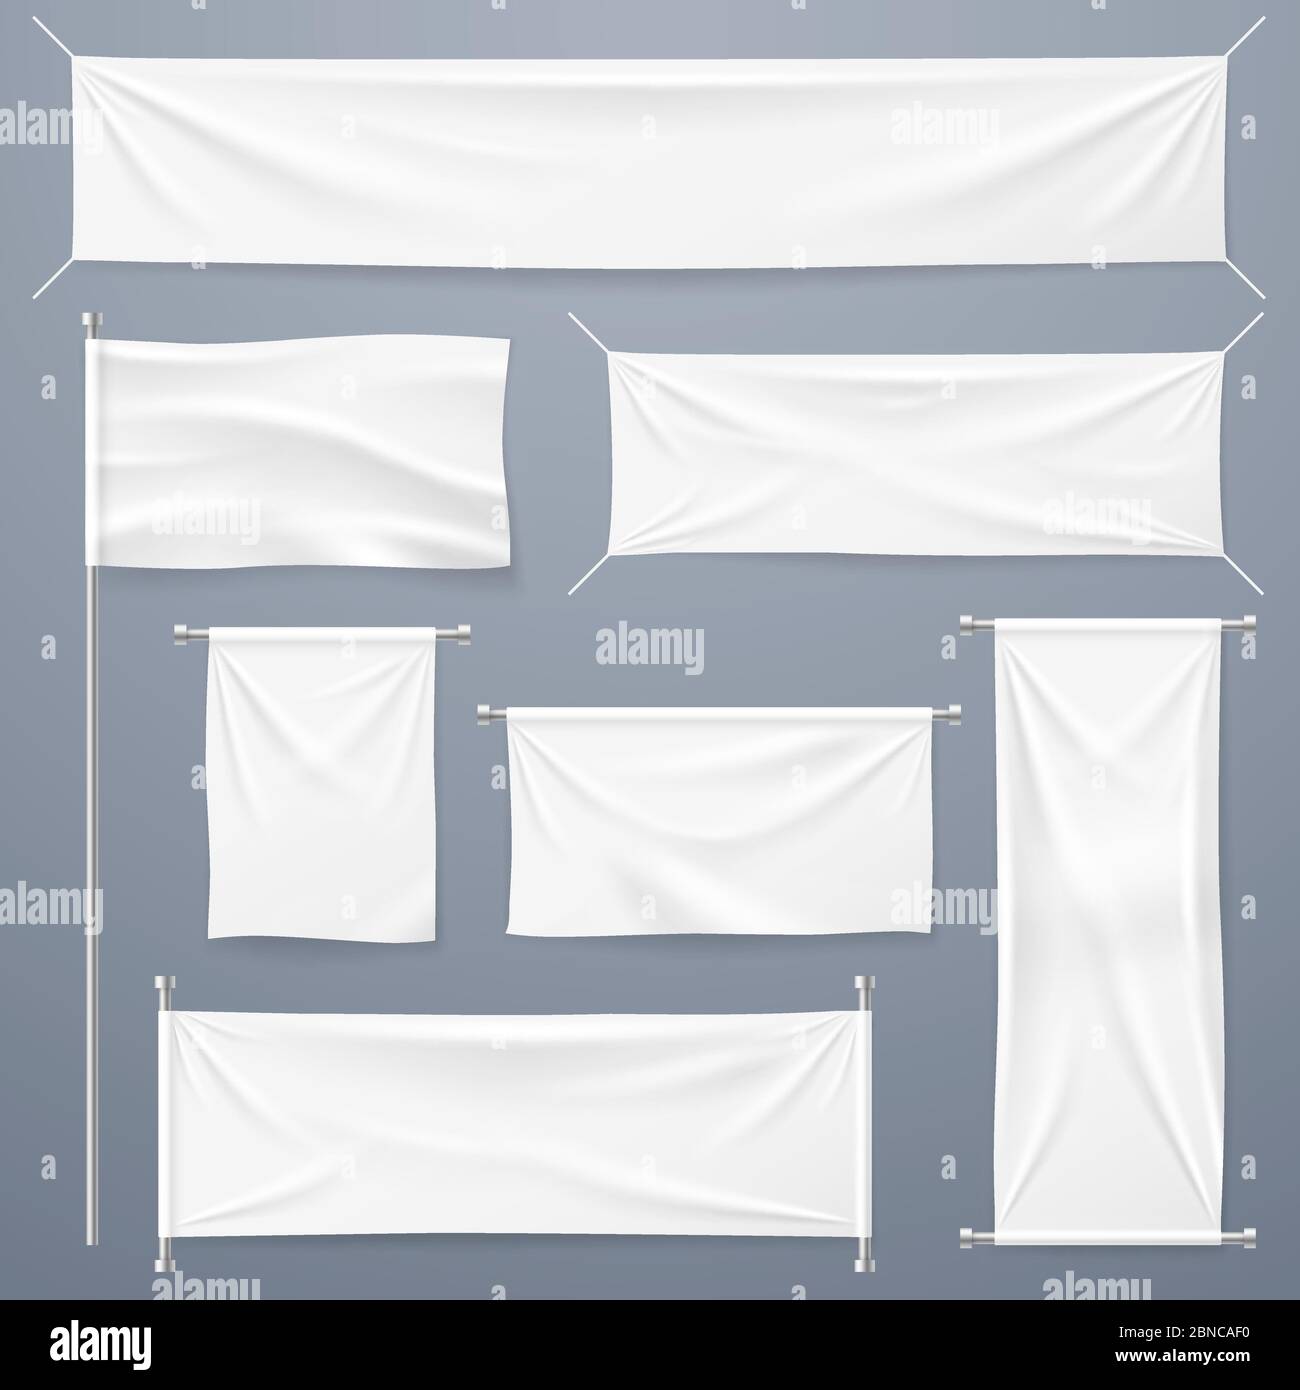 Textilbanner. Weiße leere Tuch horizontal, vertikale Banner und Flagge.  Stoff Werbebänder und Poster Vektor-Vorlage. Weiße Textilfolie, Material  Leinwand hängende Illustration Stock-Vektorgrafik - Alamy